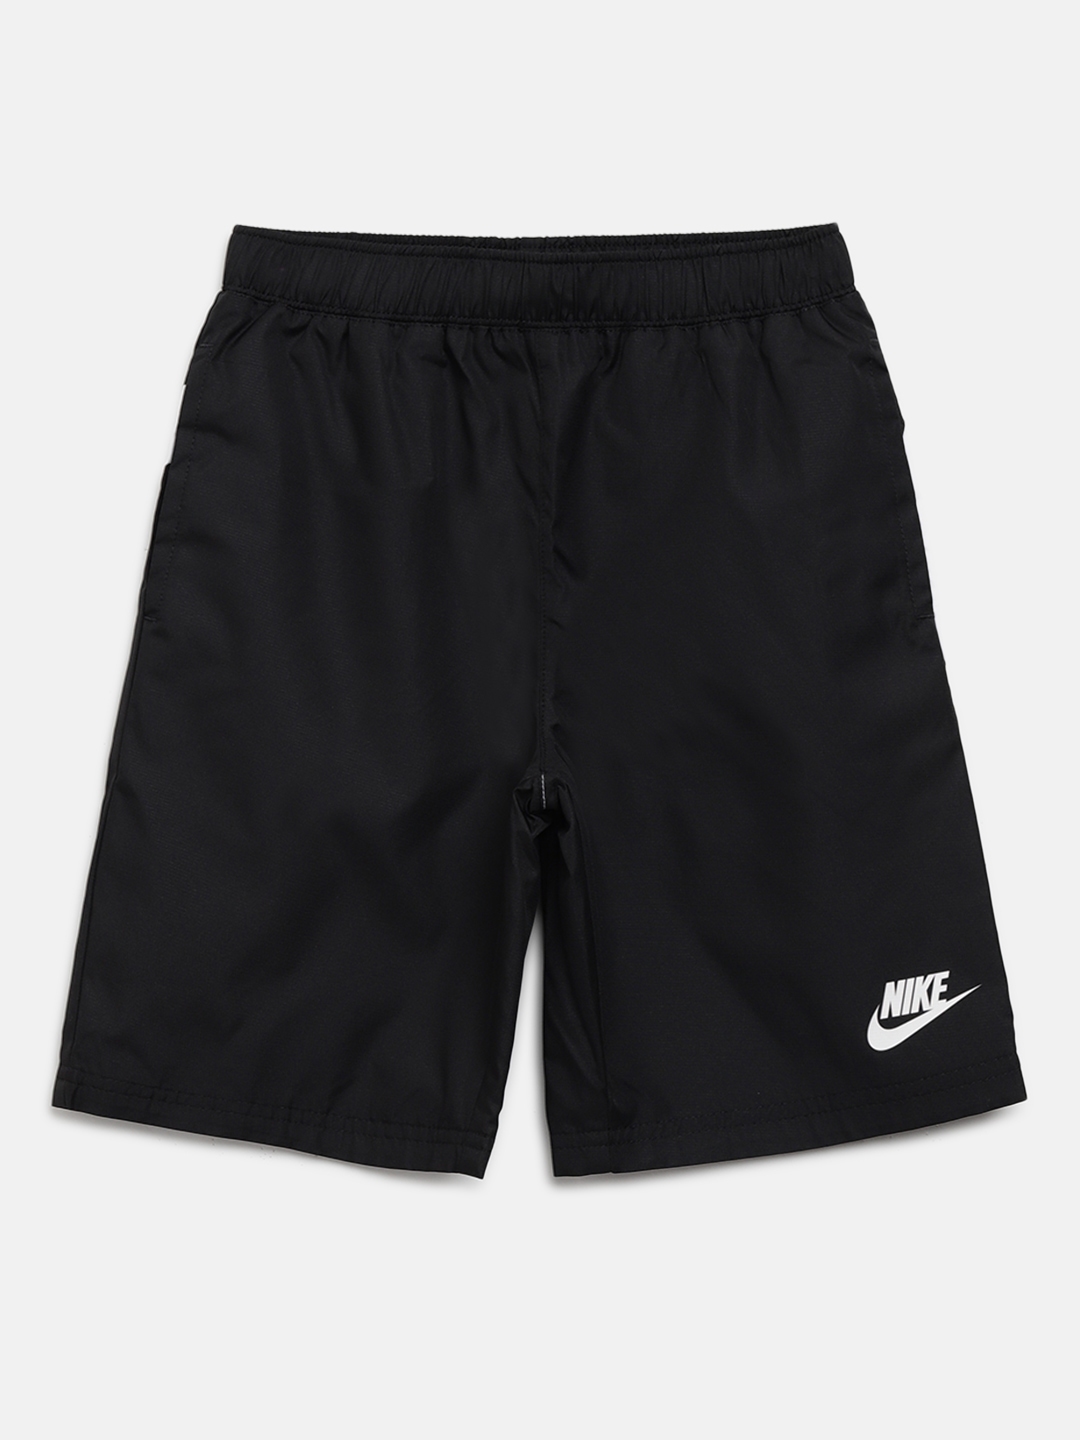 Buy Nike Boys Black & White Solid Oversized Swoosh Sports Shorts ...